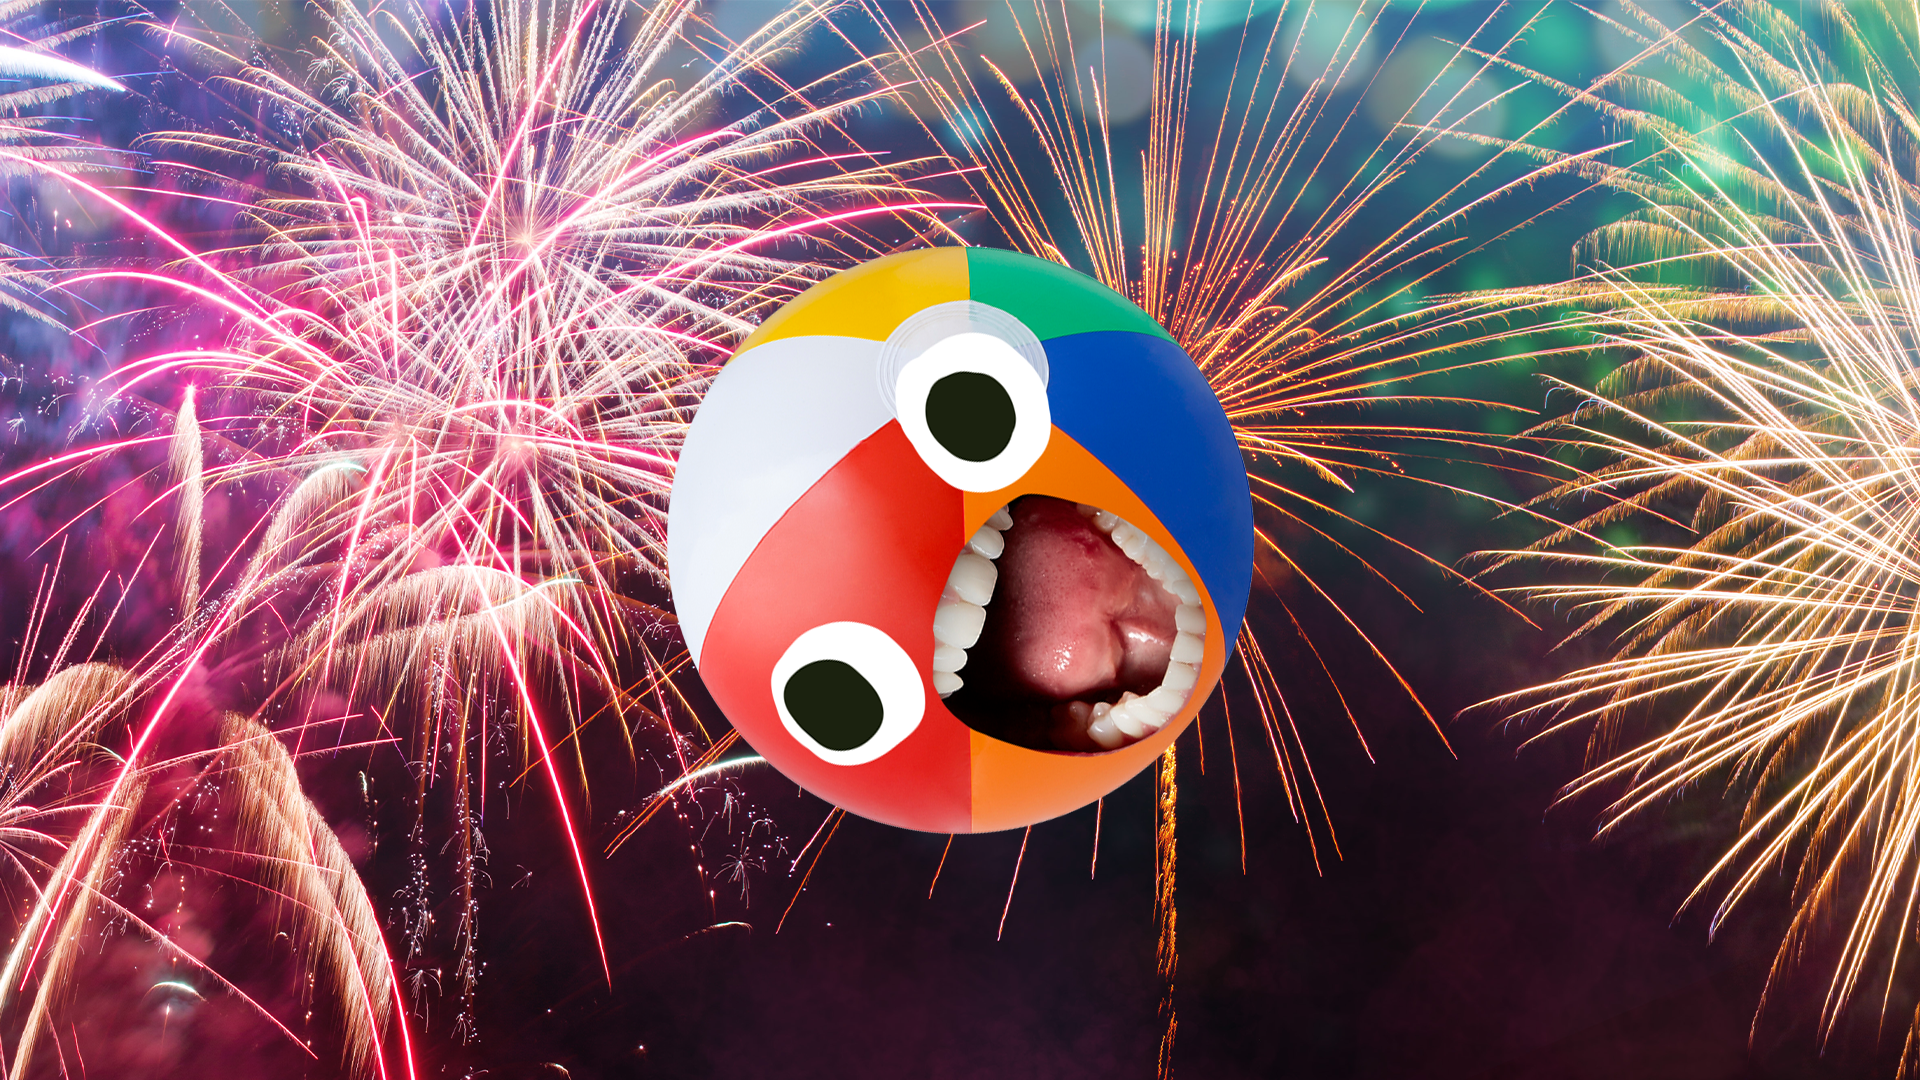 Beachball screaming at fireworks